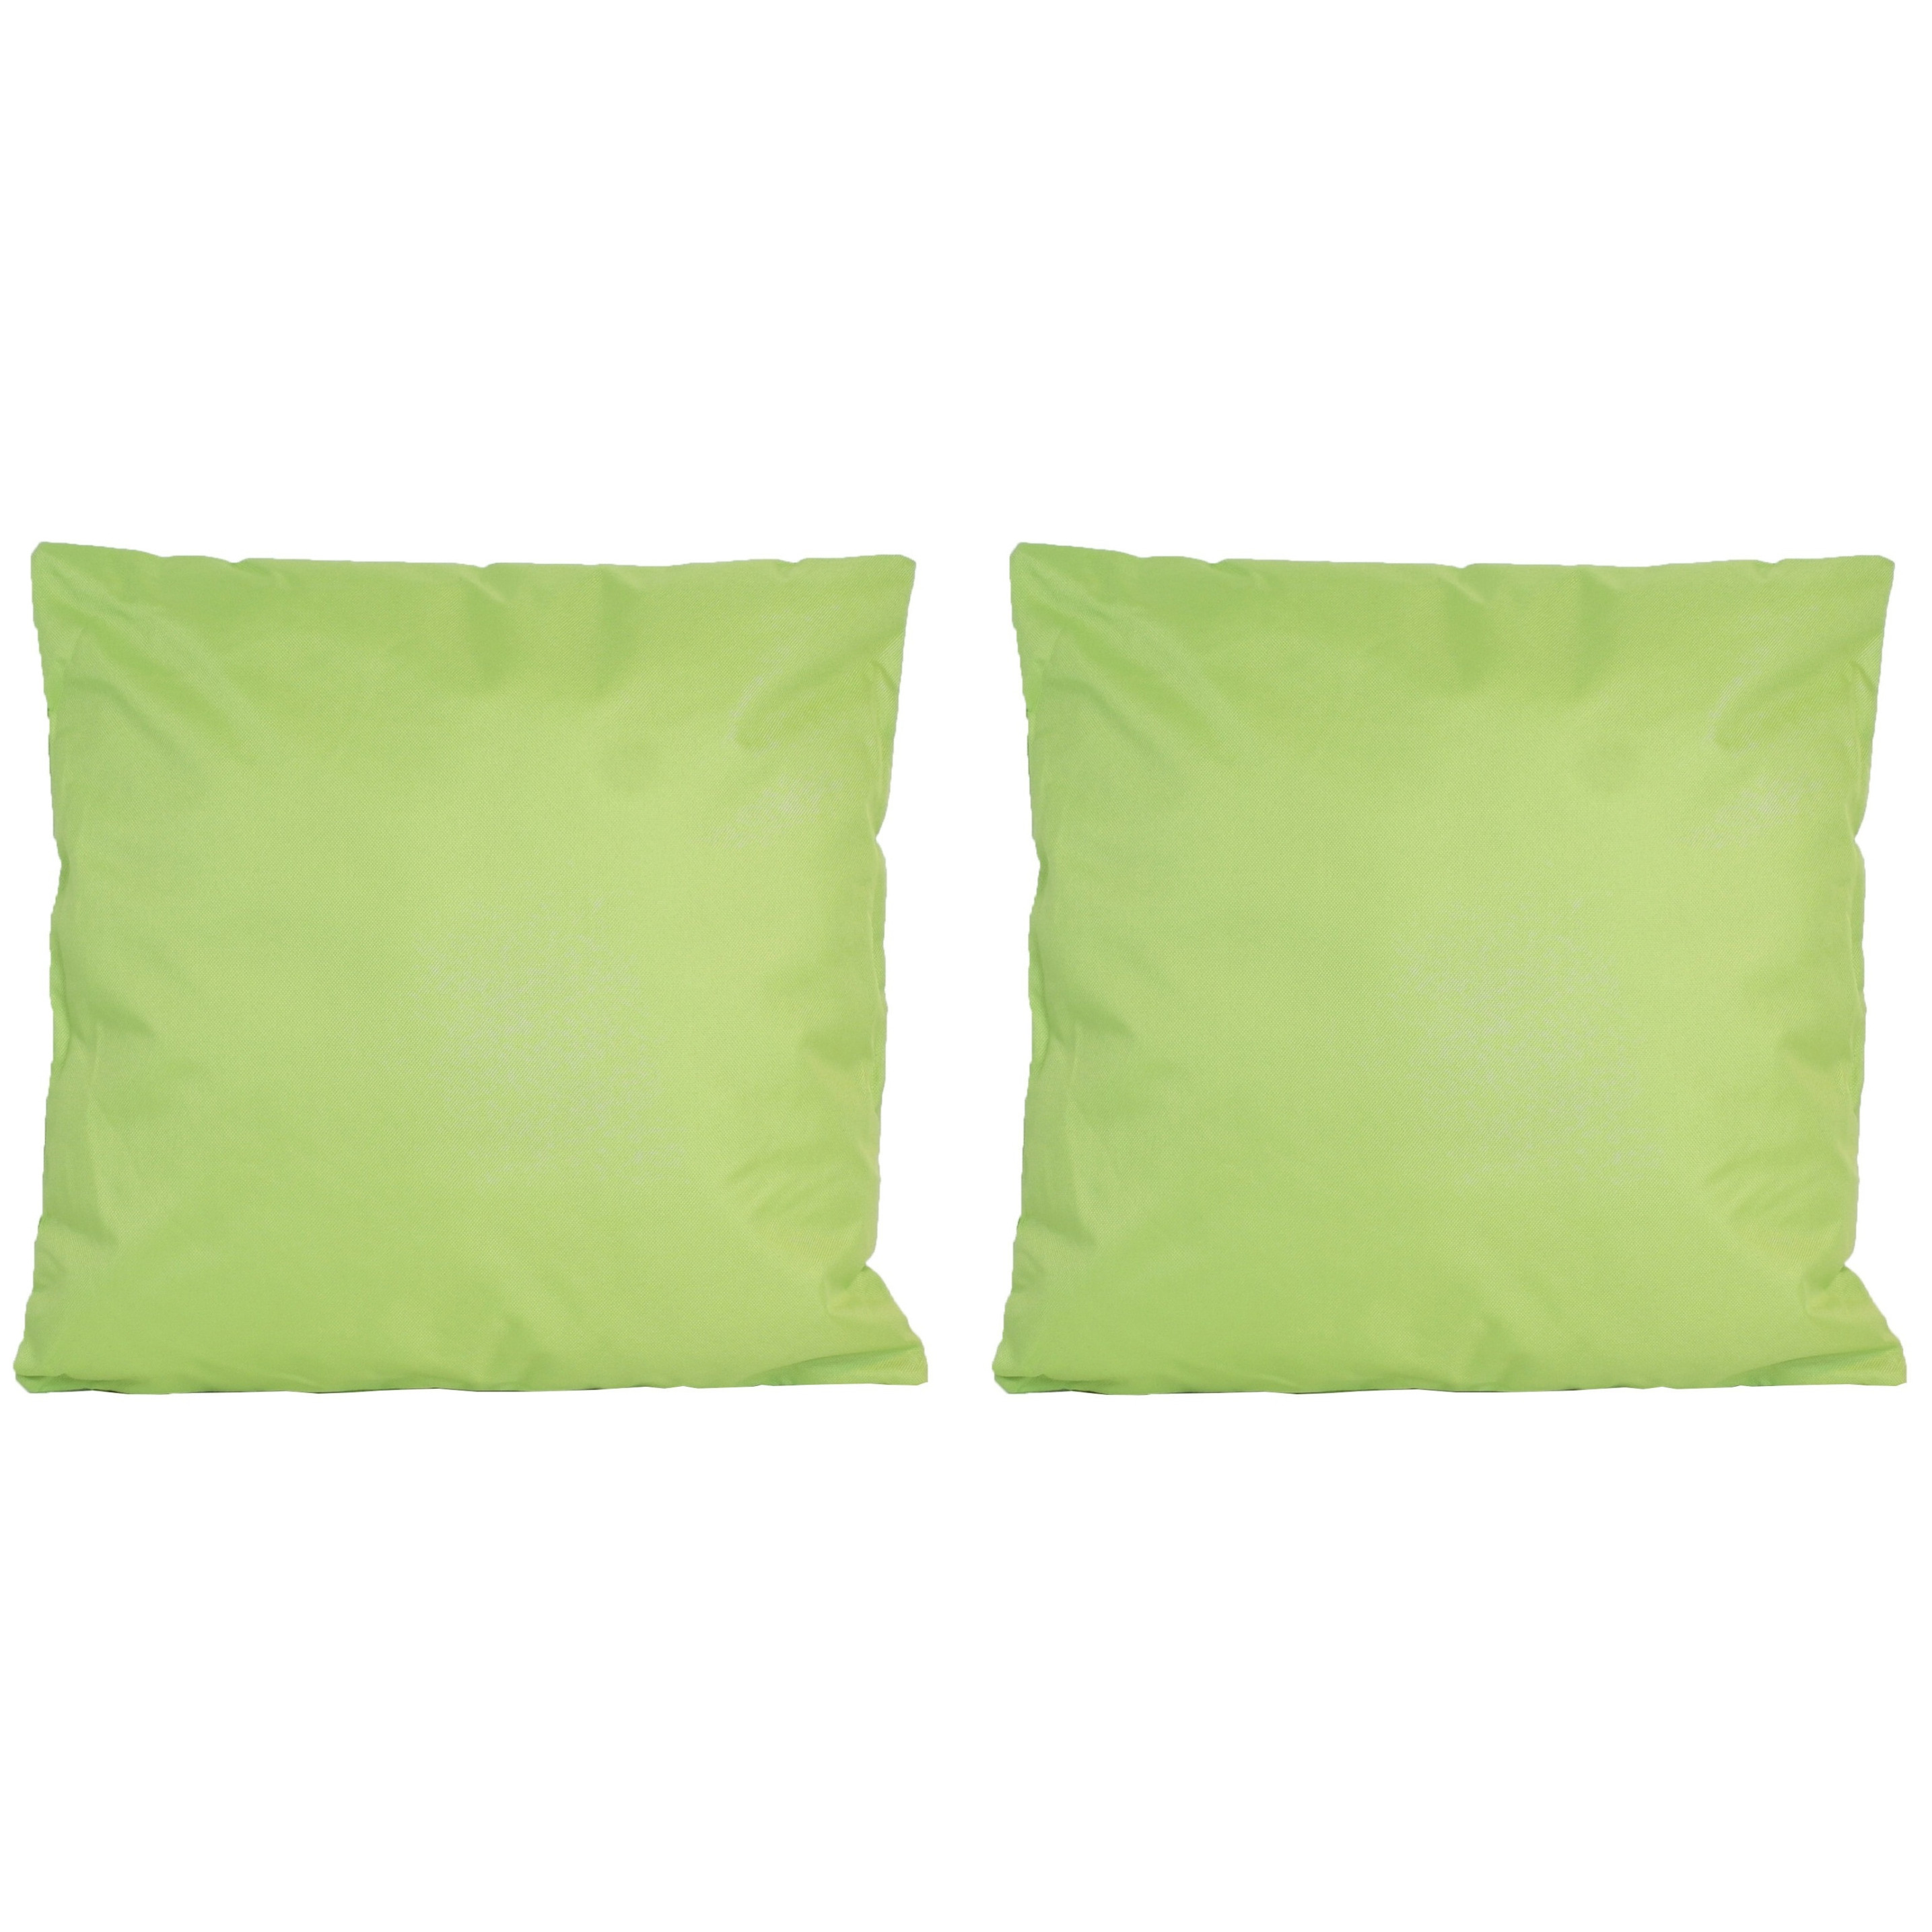 6x Bank-sier kussens voor binnen en buiten in de kleur groen 45 x 45 cm